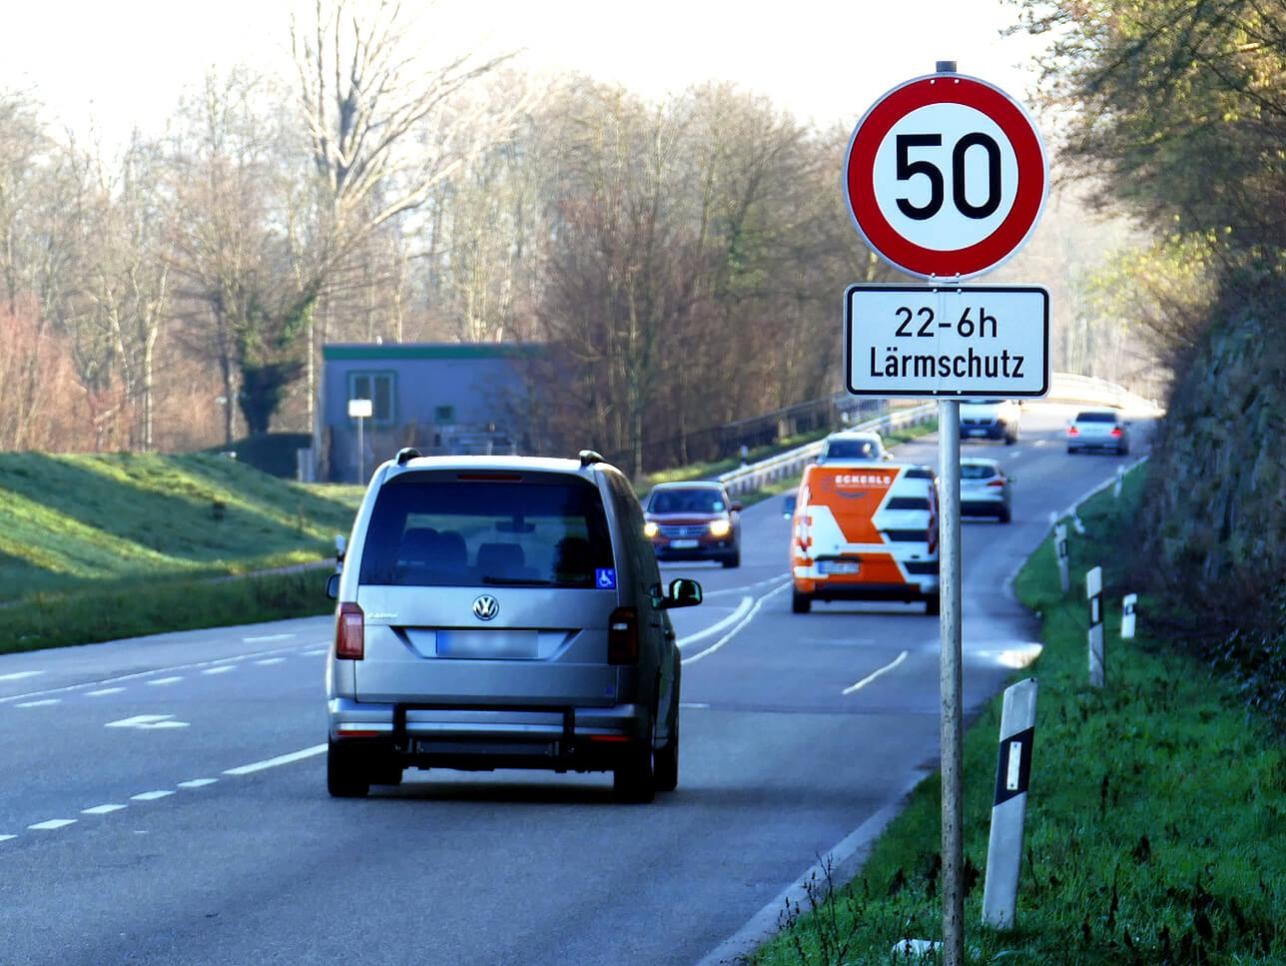 Rue à Rastatt avec voitures, limitation de vitesse à 50 km/h et panneau antibruit